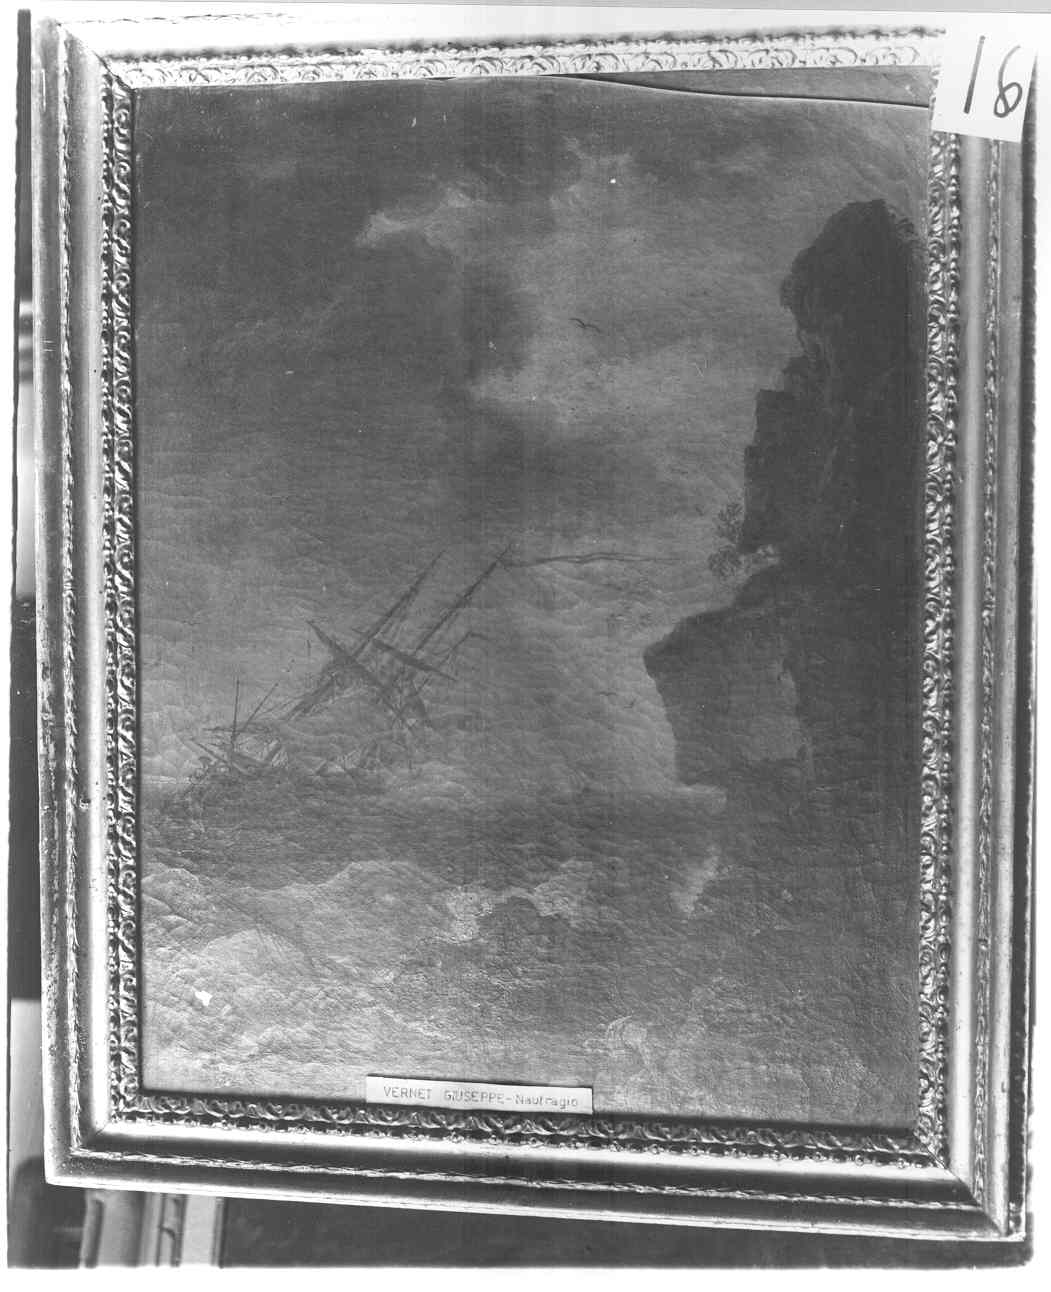 paesaggio marino con naufragio (dipinto) di Vernet Joseph (sec. XVIII)